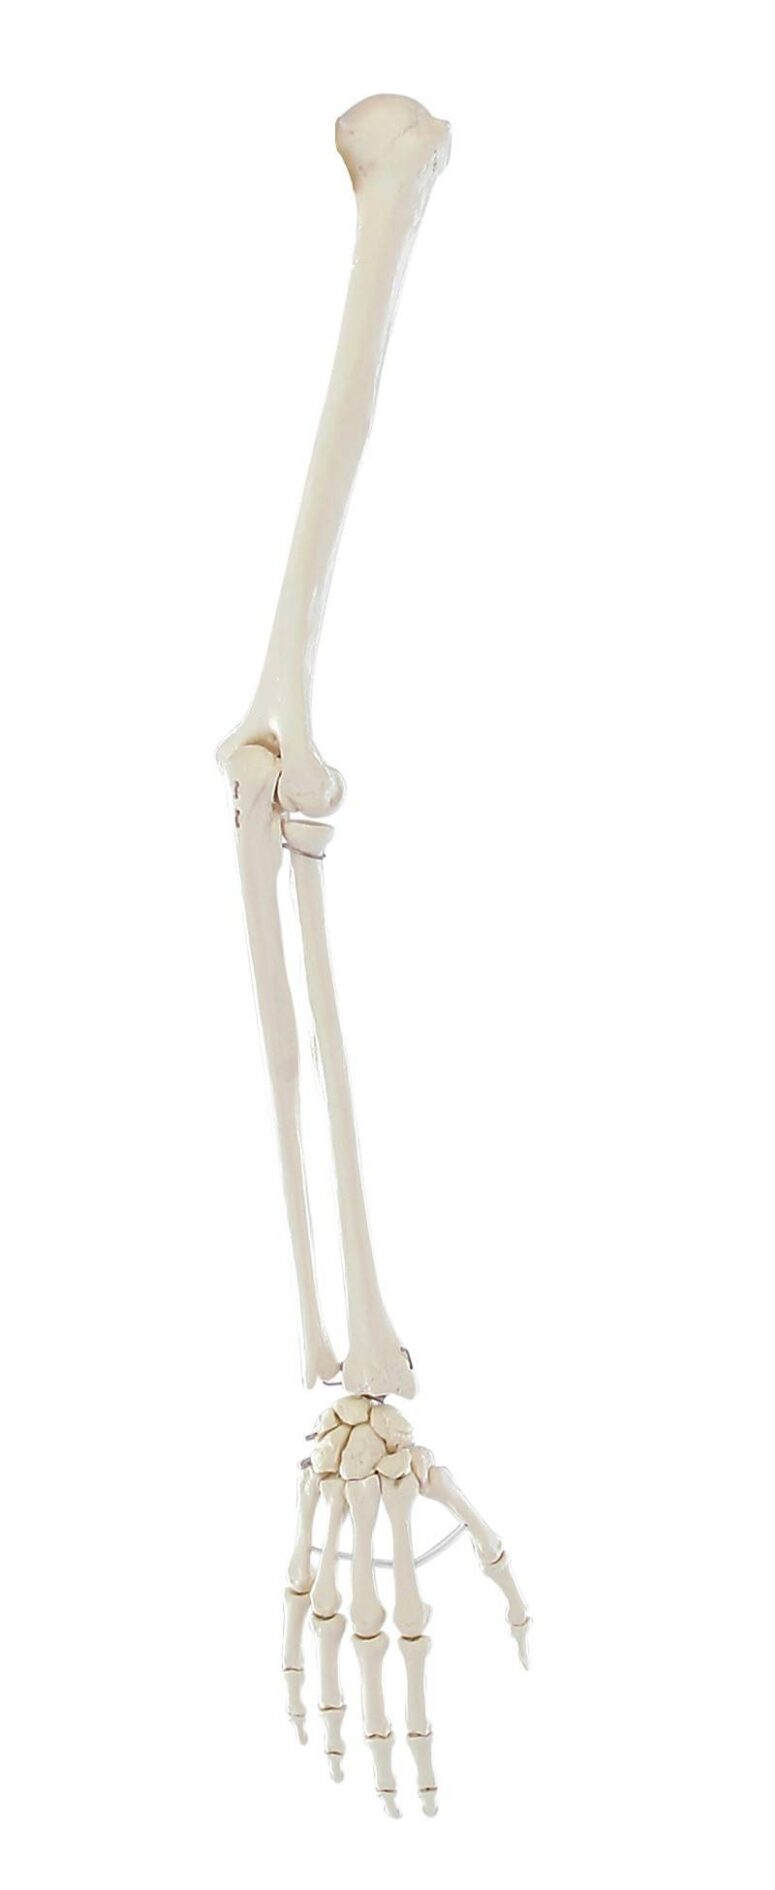 Model kończyny górnej człowieka bez łopatki